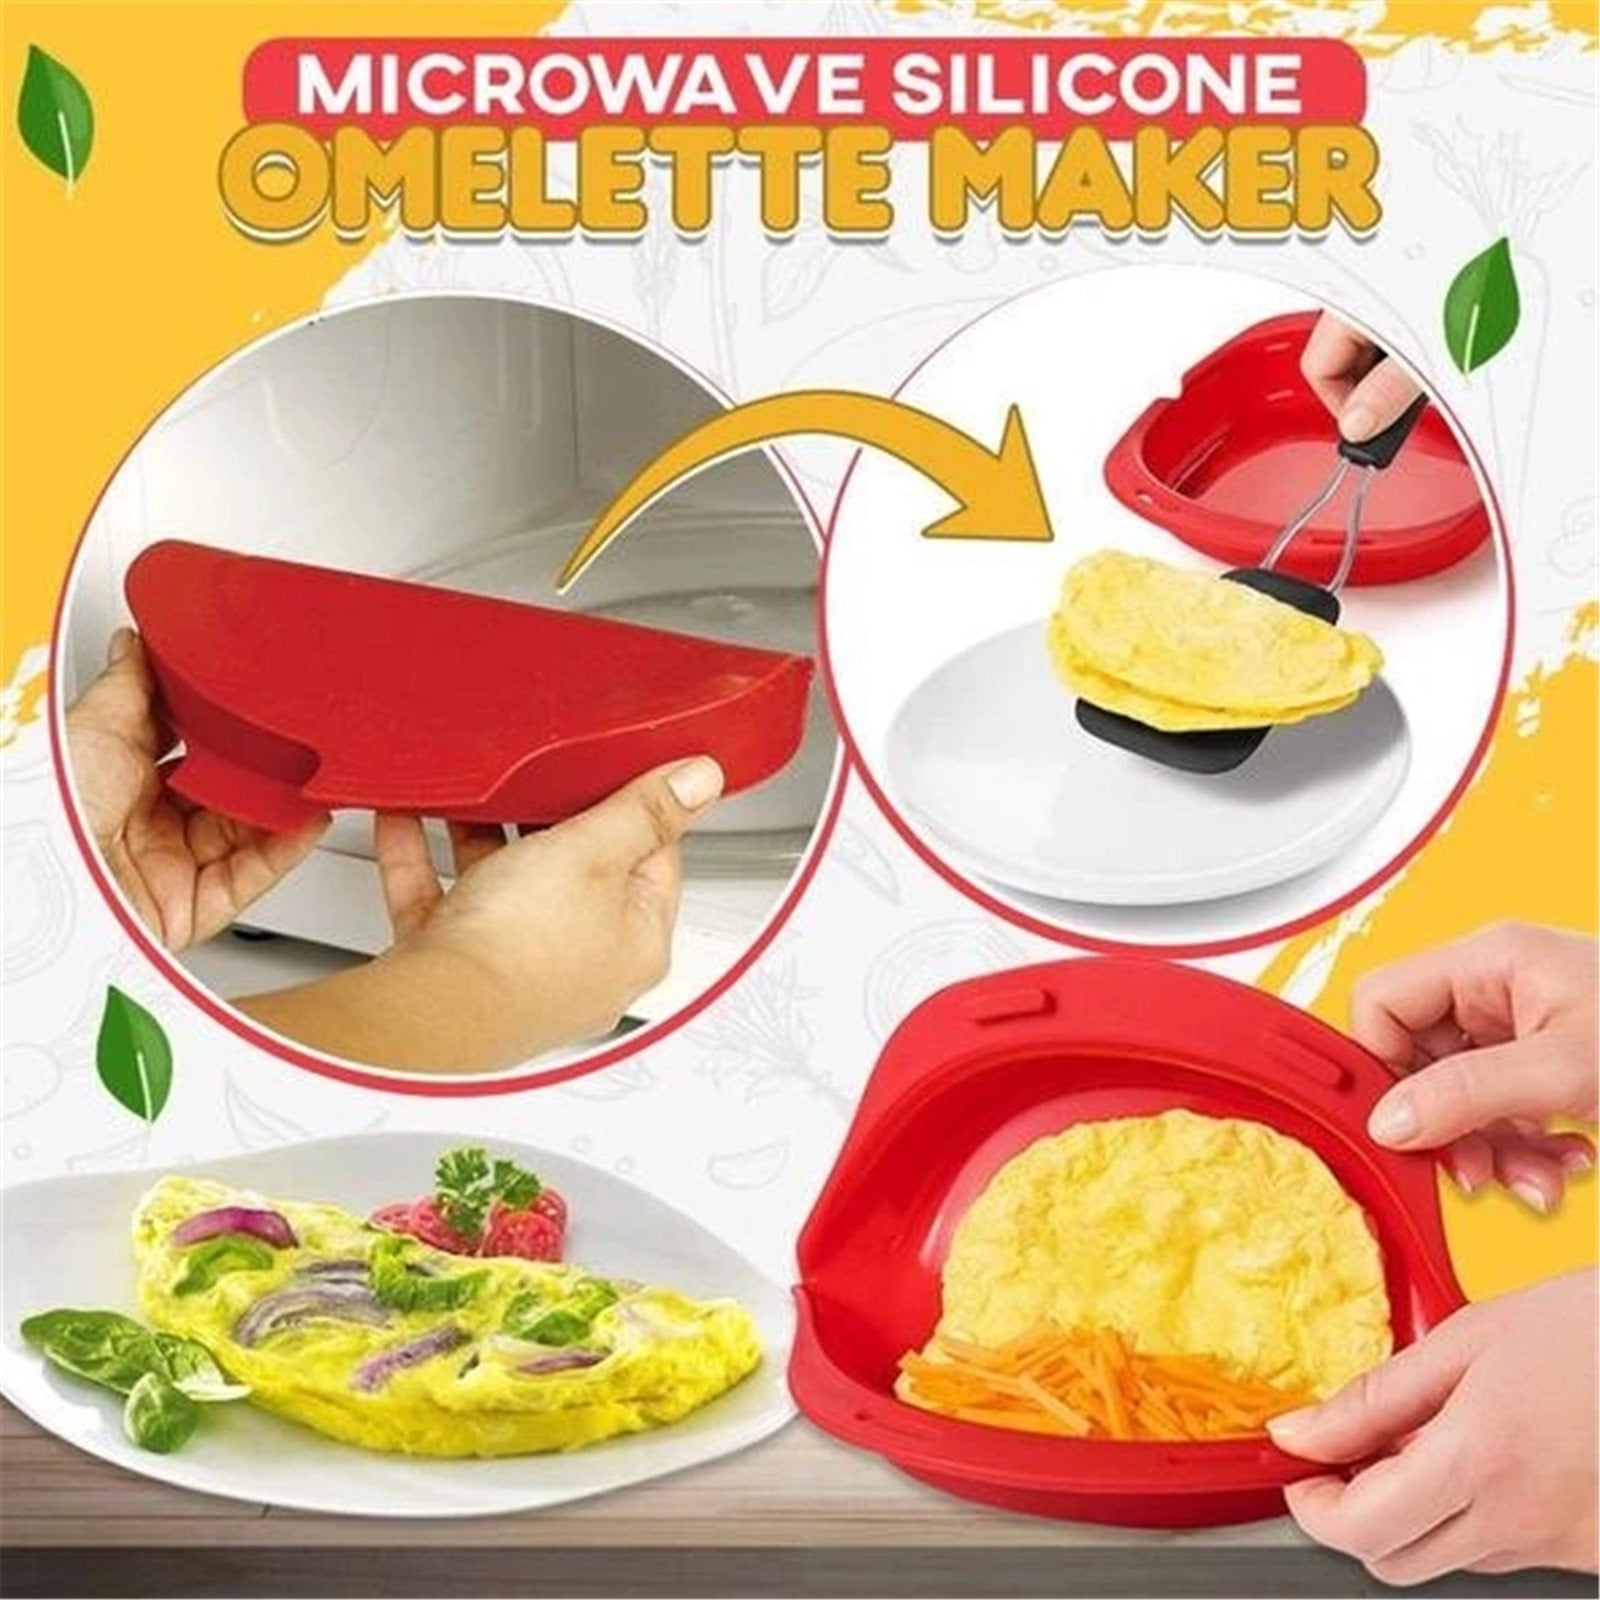 ApTimcity Silicone Omelette Maker,Microwavable Omelet Maker,Nonstick Egg  Roll Baking Pan,Quick& Easy Breakfast/Lunch/Dinner Baking Tool,Dishwash Safe